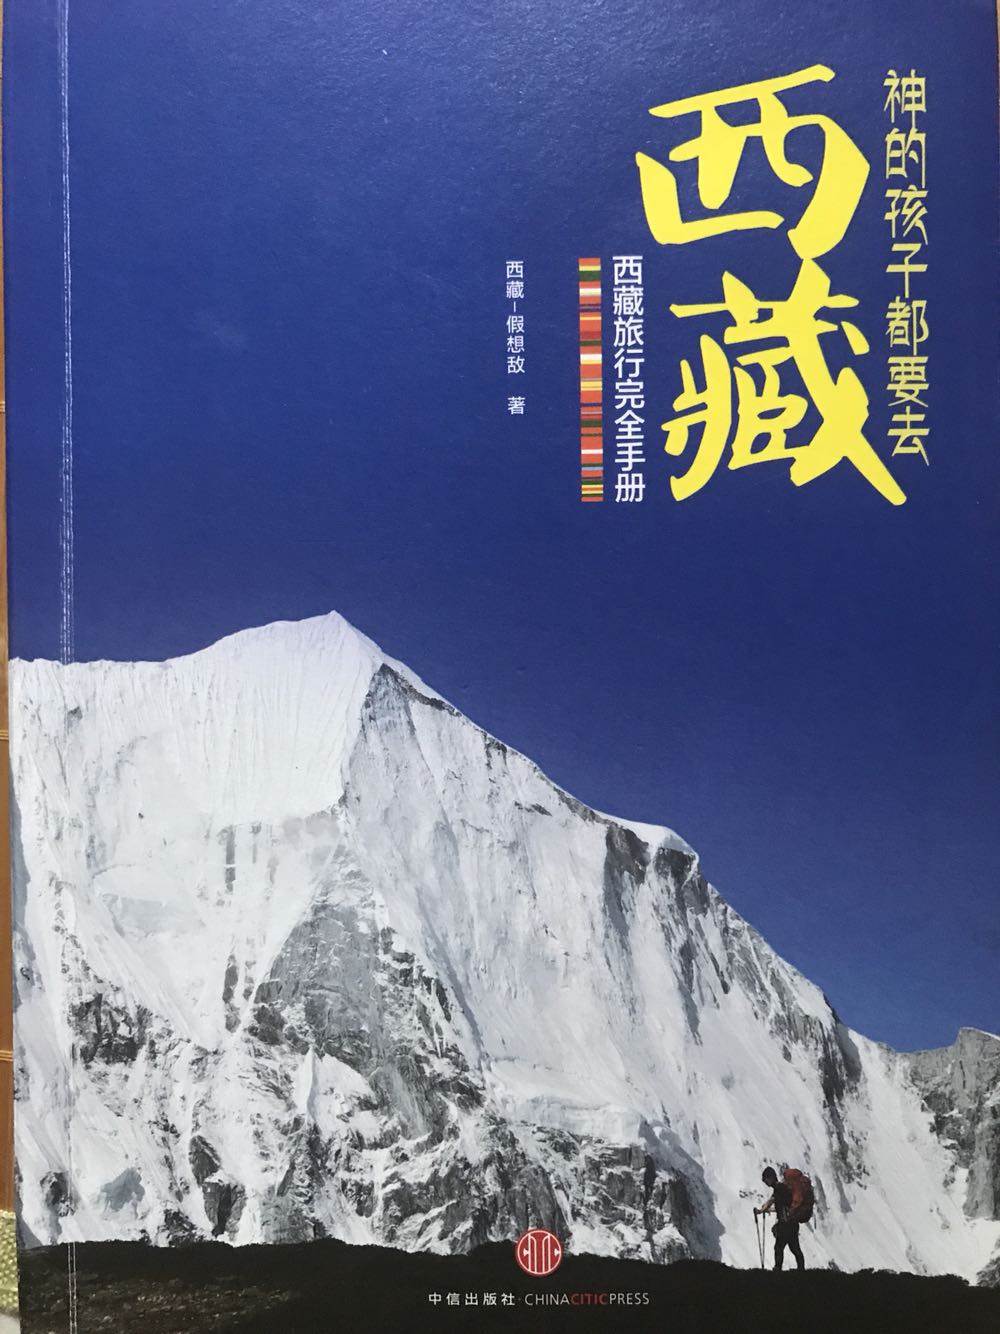 去过两次西藏，对高原情有独钟，这本书很实用，非常全面，闲时经常翻阅，结合书中的介绍，下次选择没走过的地方去旅行。